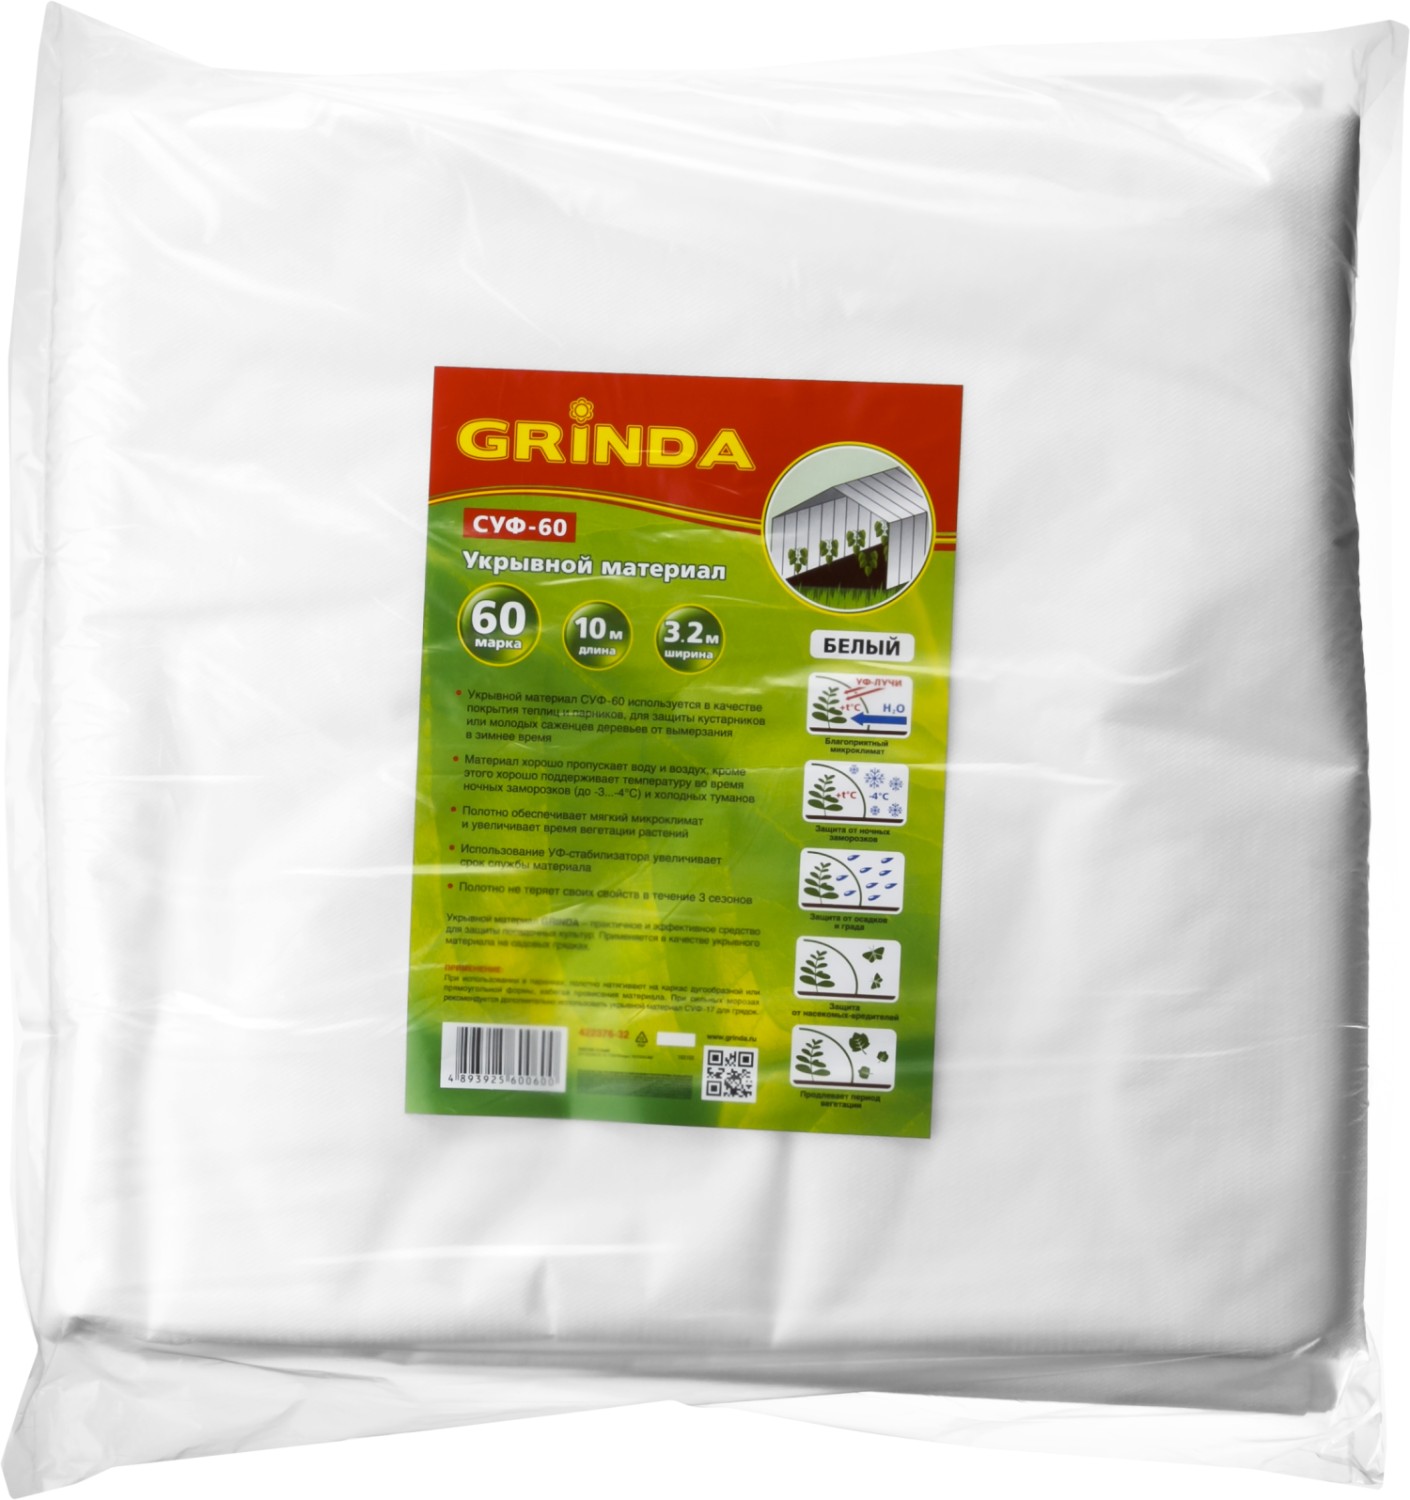 GRINDA СУФ-60, 3.2 x 10 м, белый, укрывной материал (422376-32)